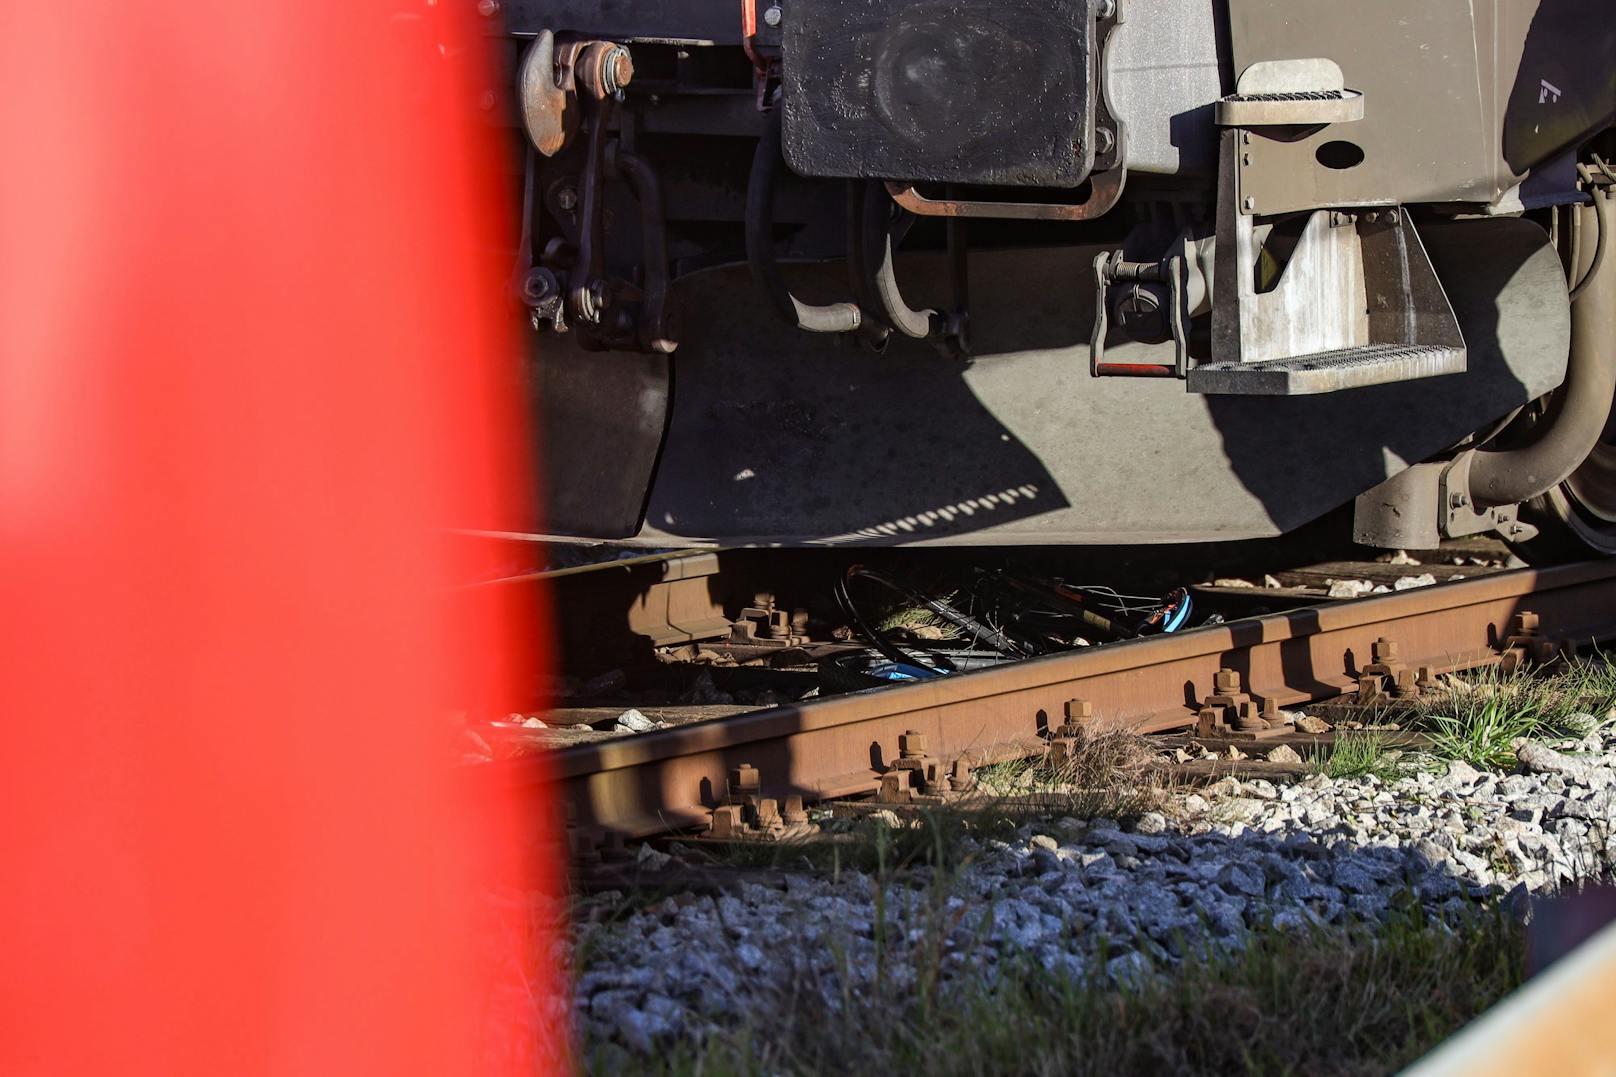 Tödlicher Unfall auf Bahnübergang in Ottensheim am 25. Oktober 2022. Ein E-Biker wurde von einem Zug überrollt, für den 70-Jährigen kam jede Hilfe zu spät.